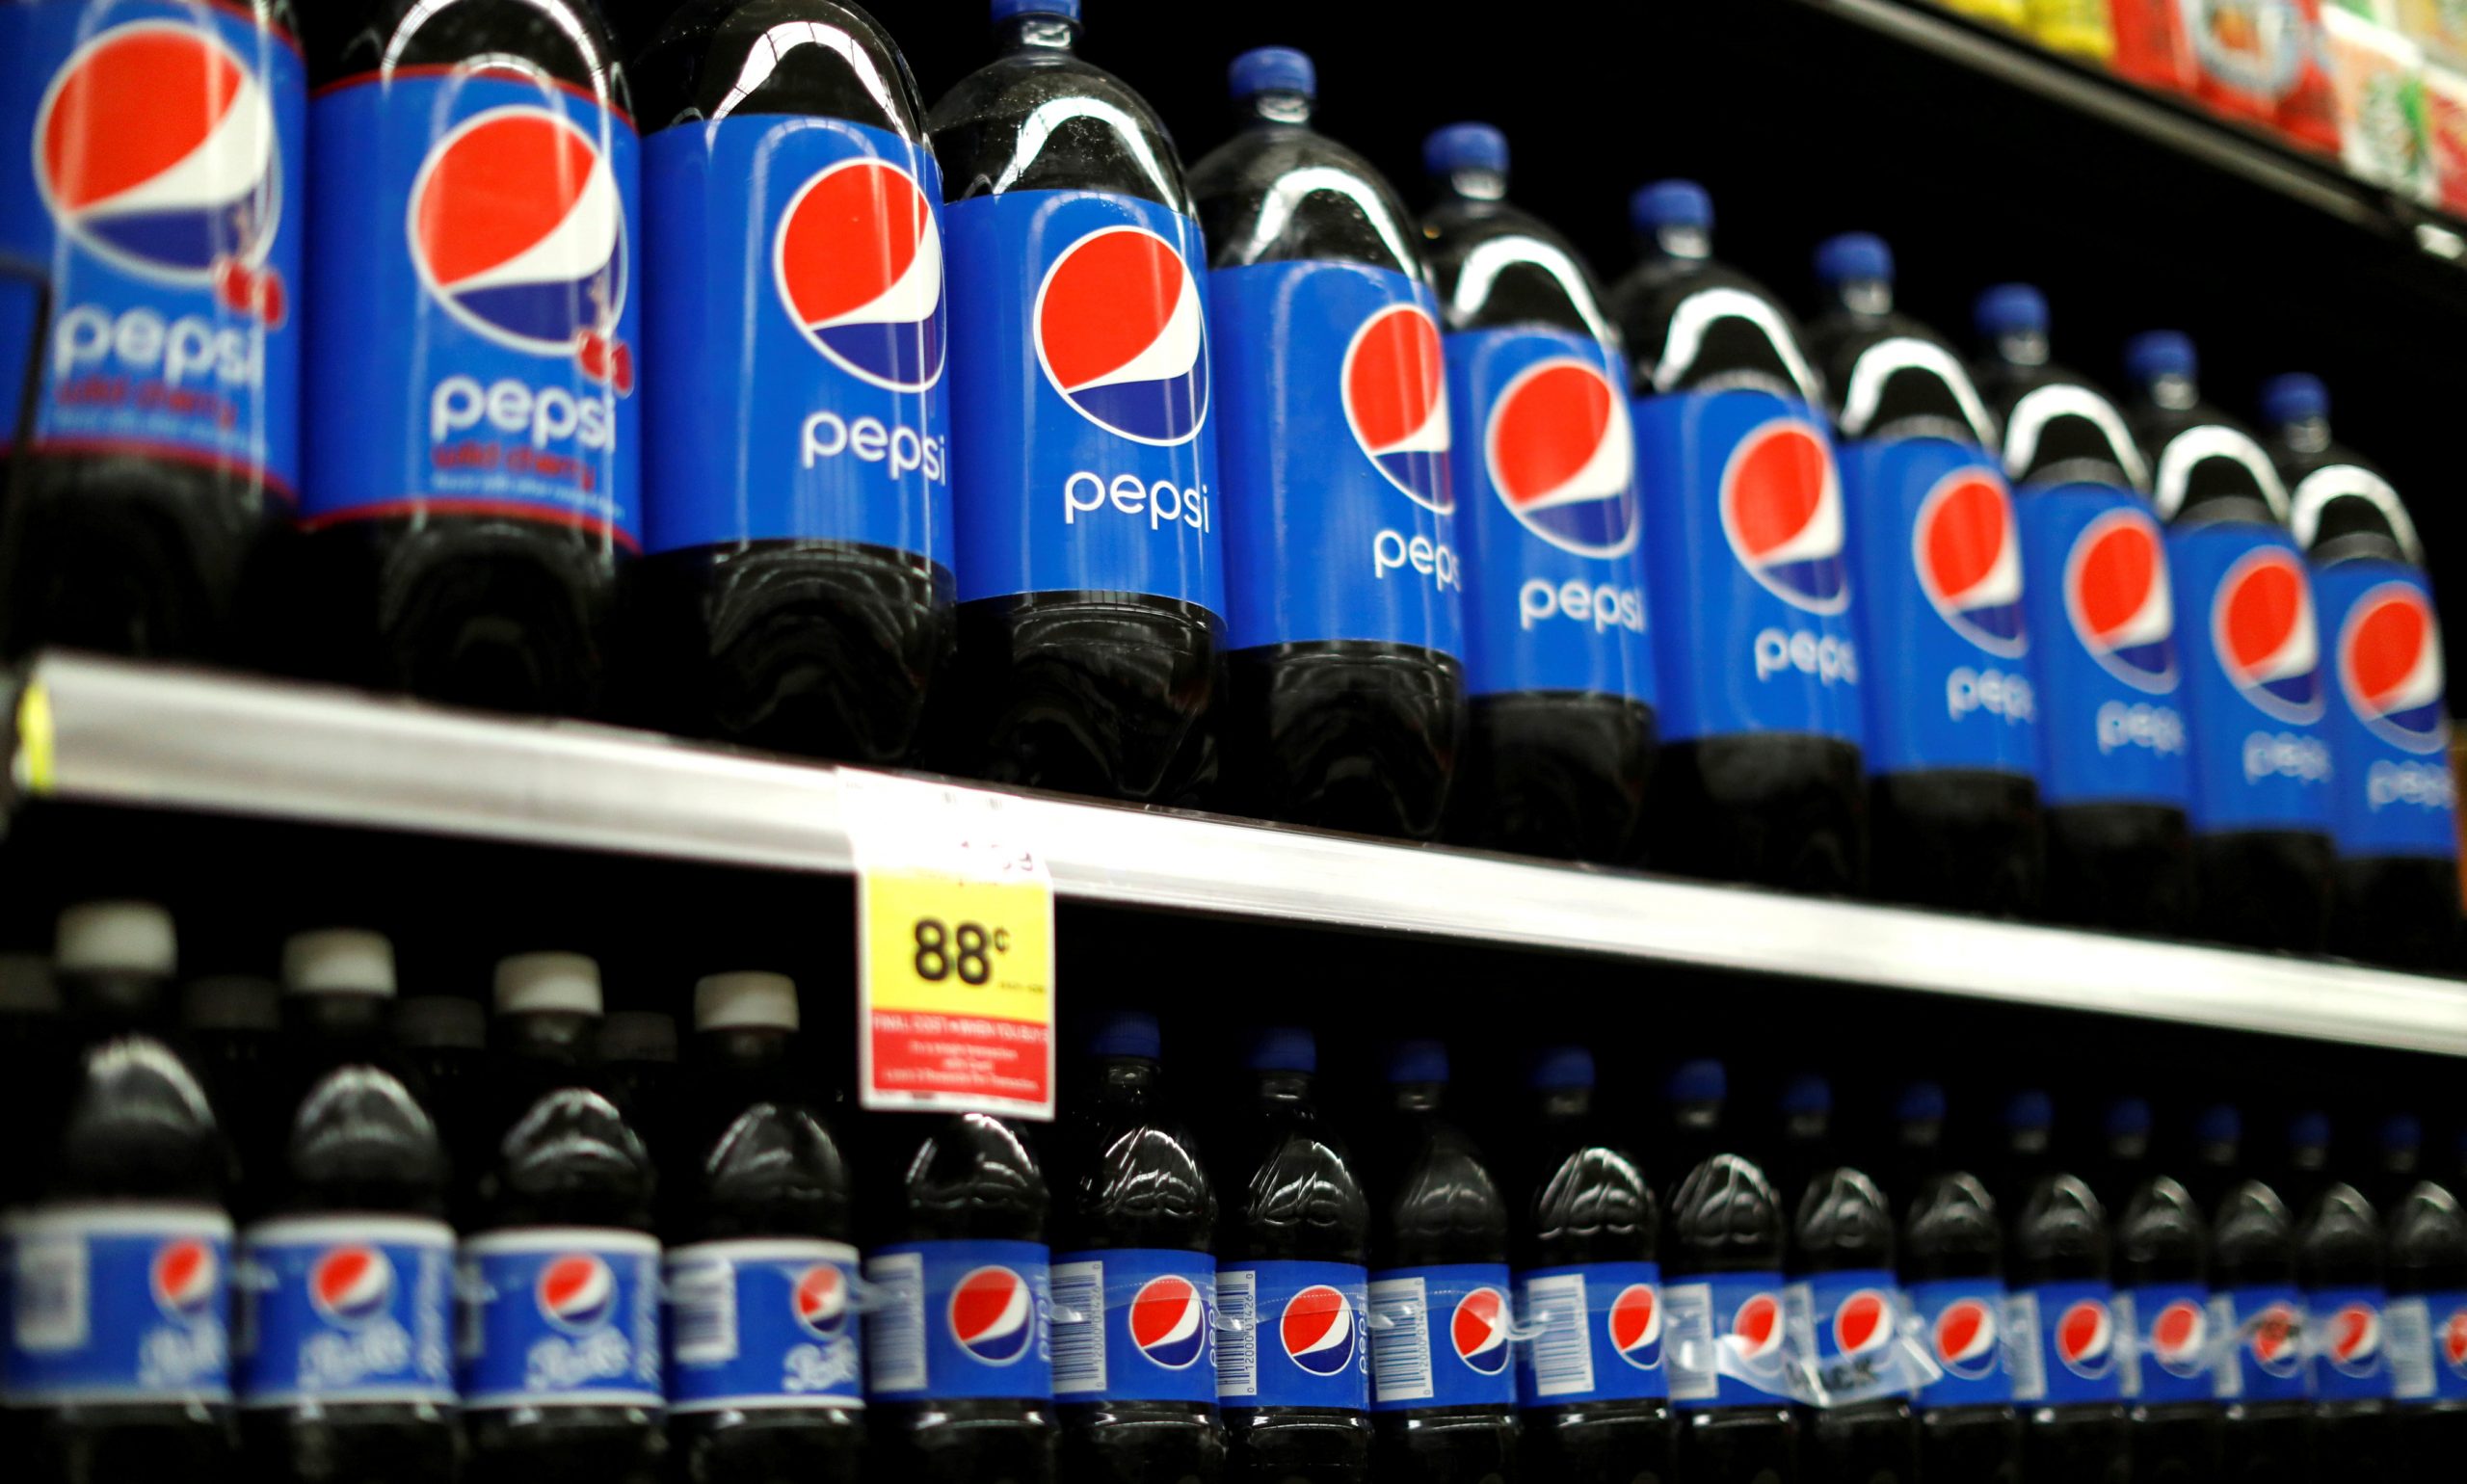 Pepsico – Πουλά τα brands Tropicana και Naked juice σε επενδυτική εταιρεία